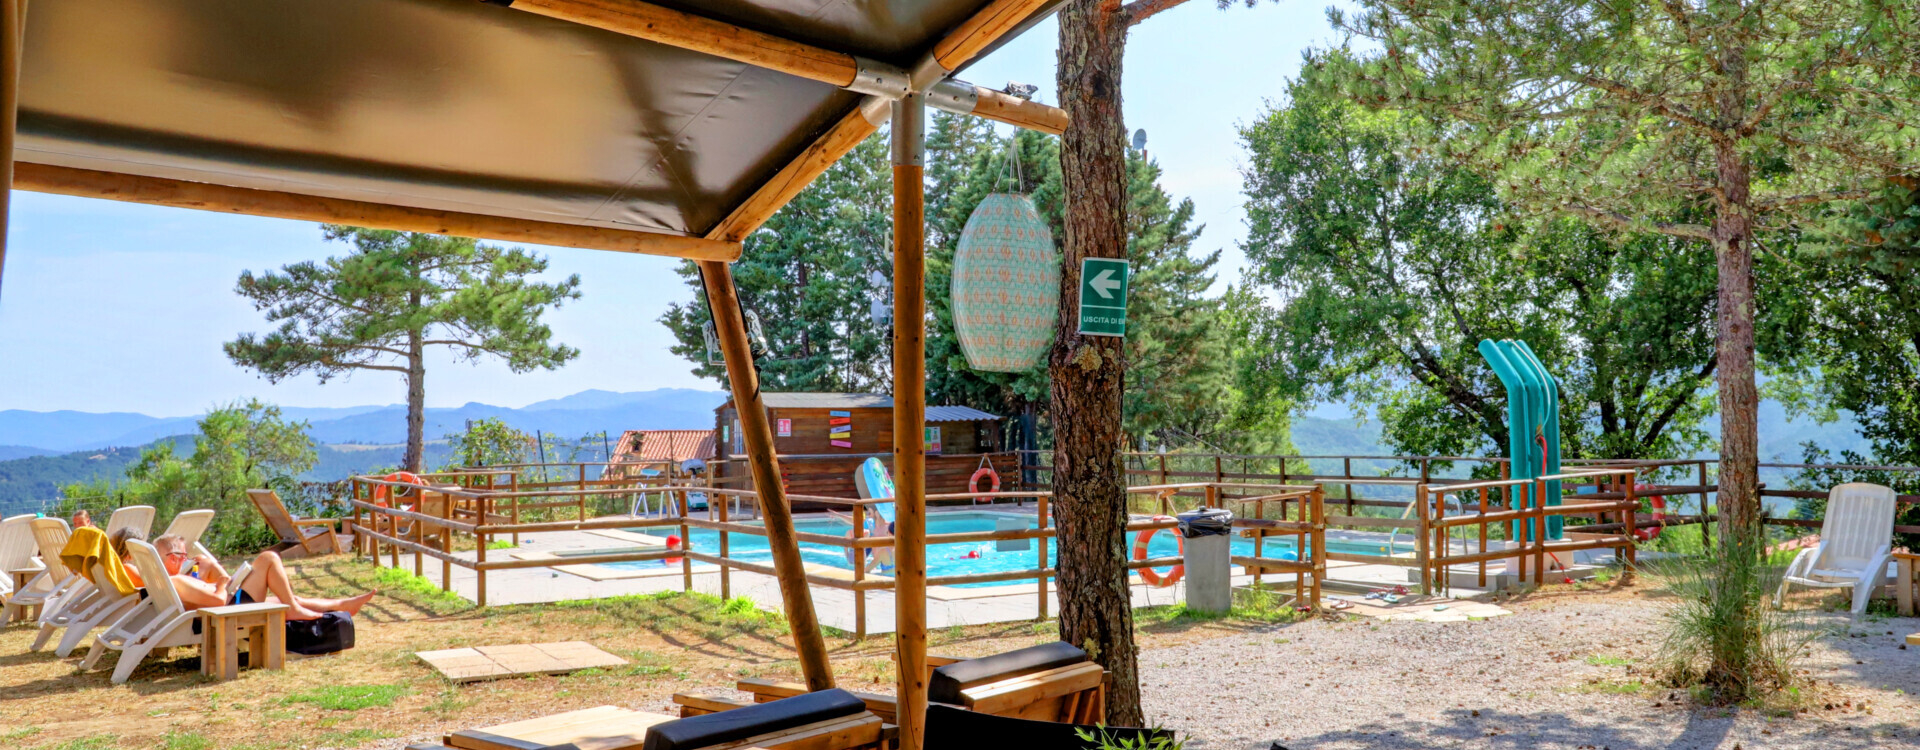 Camping Luna del Monte zicht op zwembad en bergen vanuit poolbar